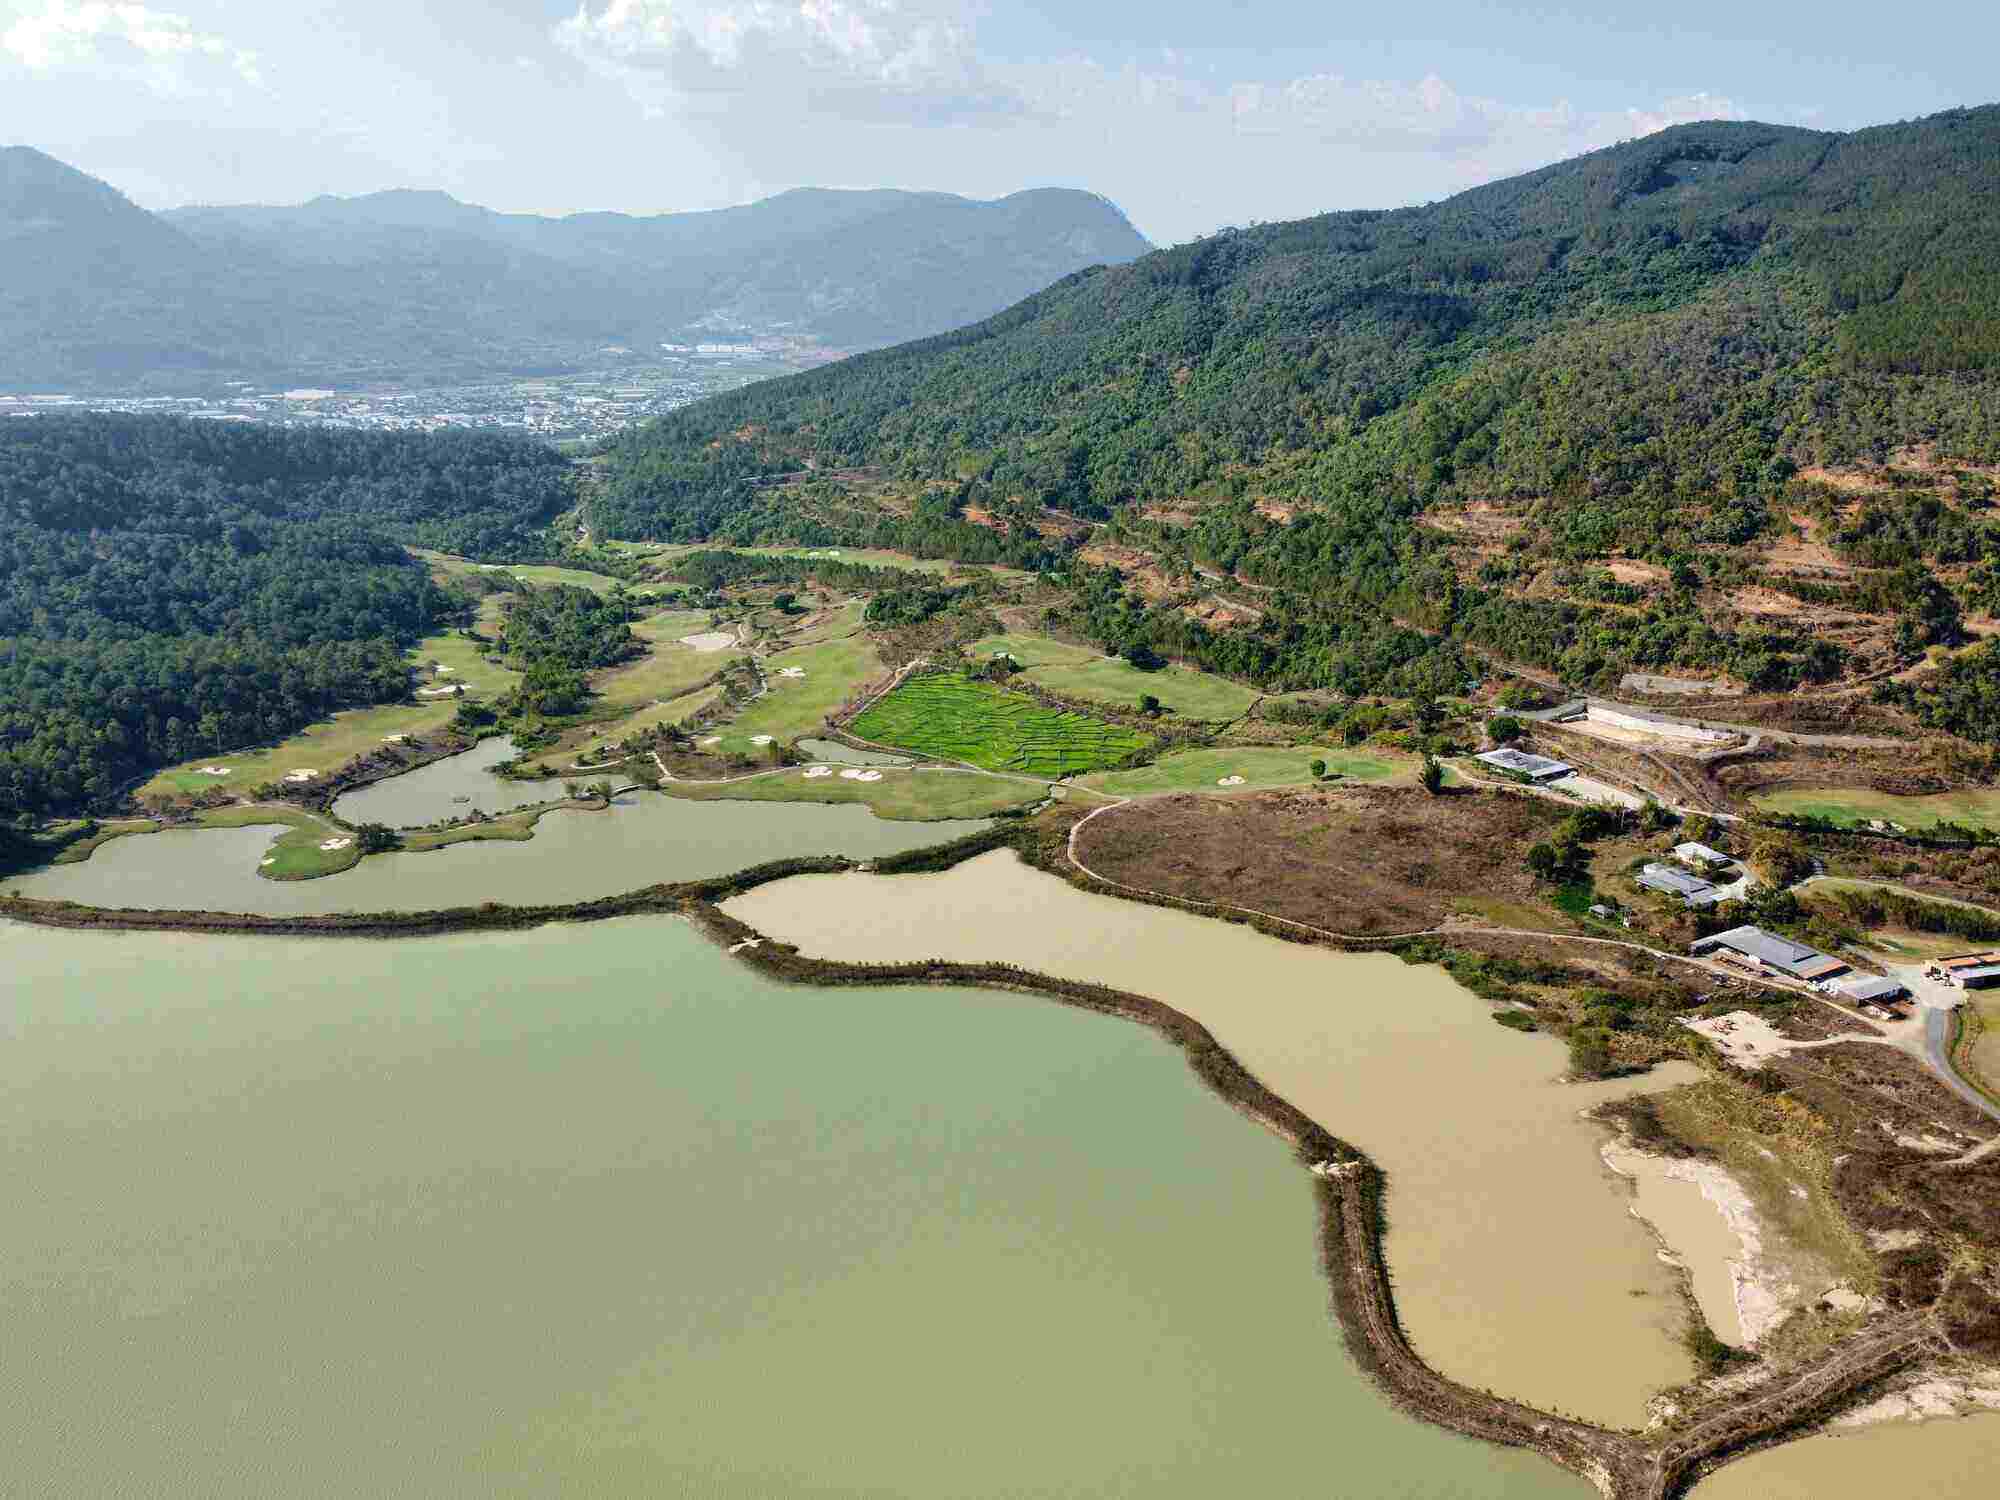 Theo Sở Nông nghiệp và Phát triển nông thôn tỉnh Lâm Đồng, Công ty TNHH Acteam International đã phá rừng để xây dựng công trình hạ tầng. Ảnh: Cộng tác viên